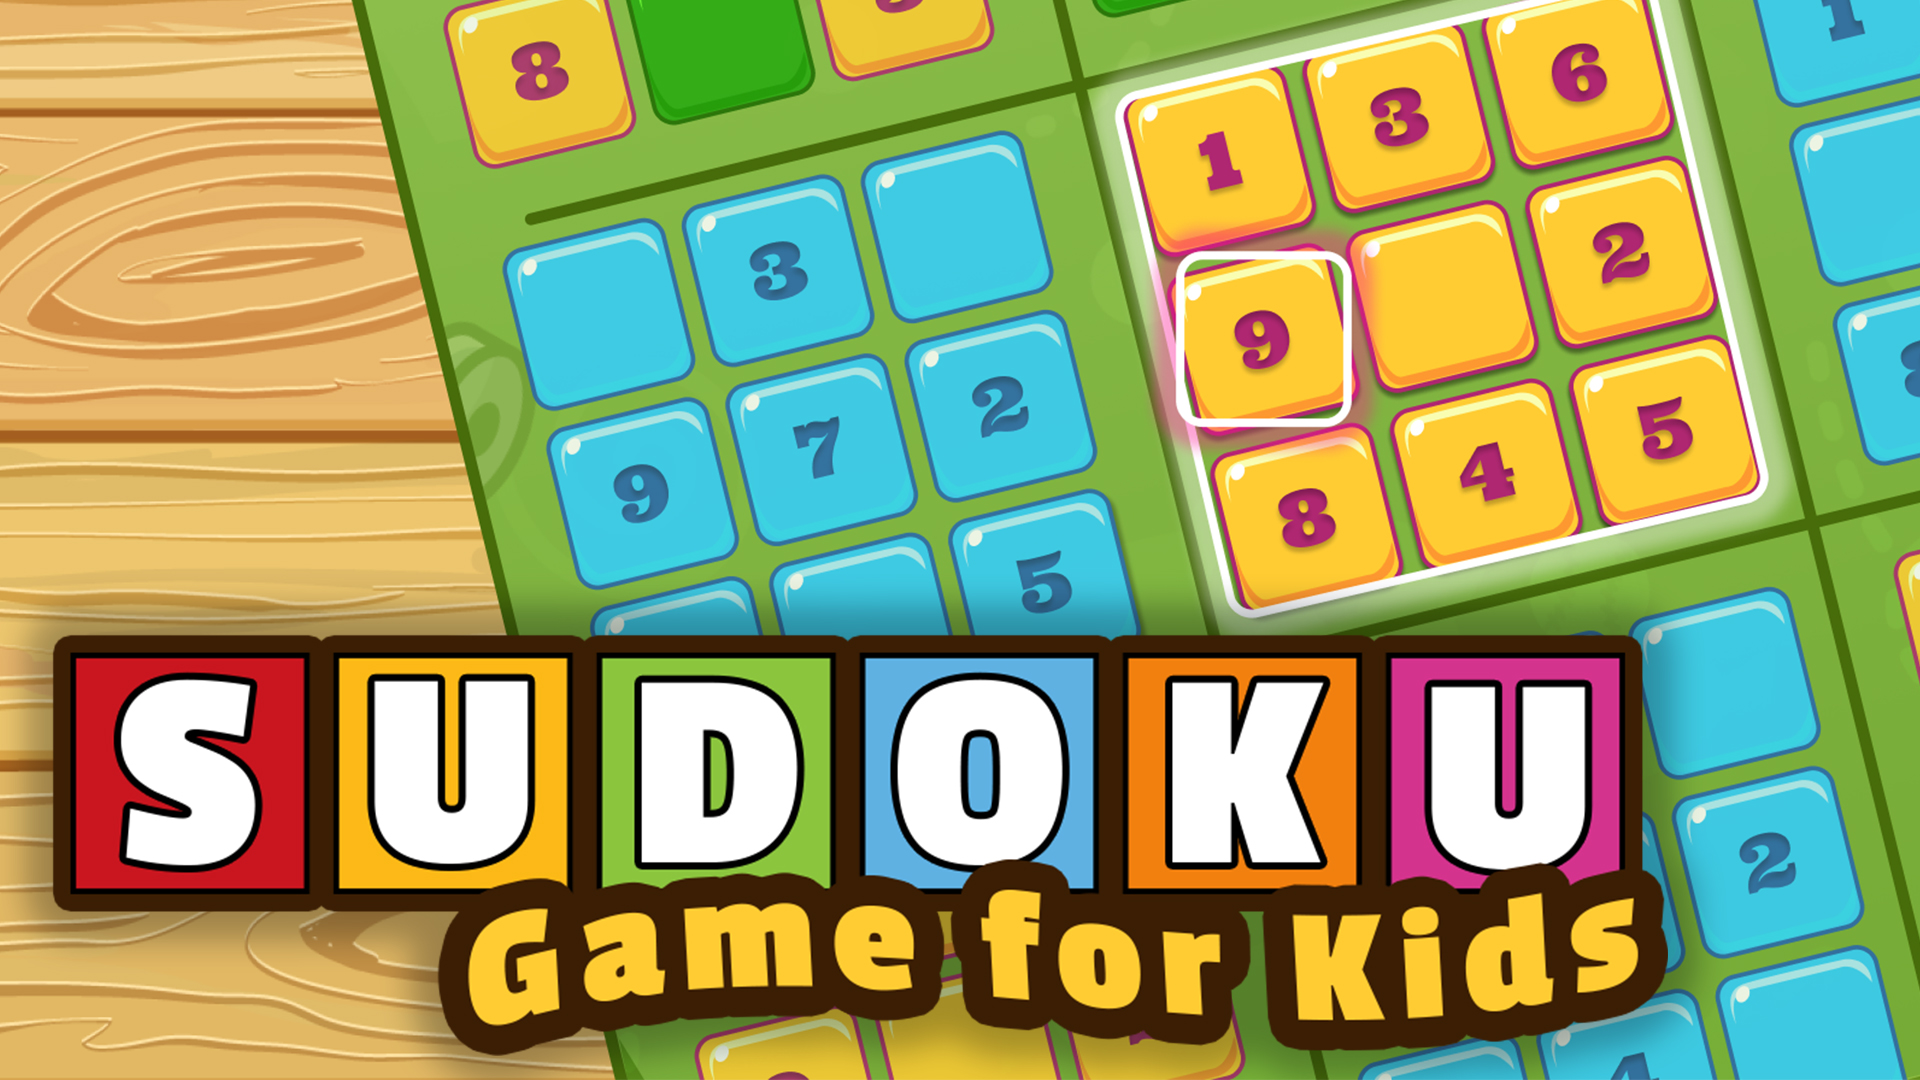 SUDOKU - GAME FOR KIDS